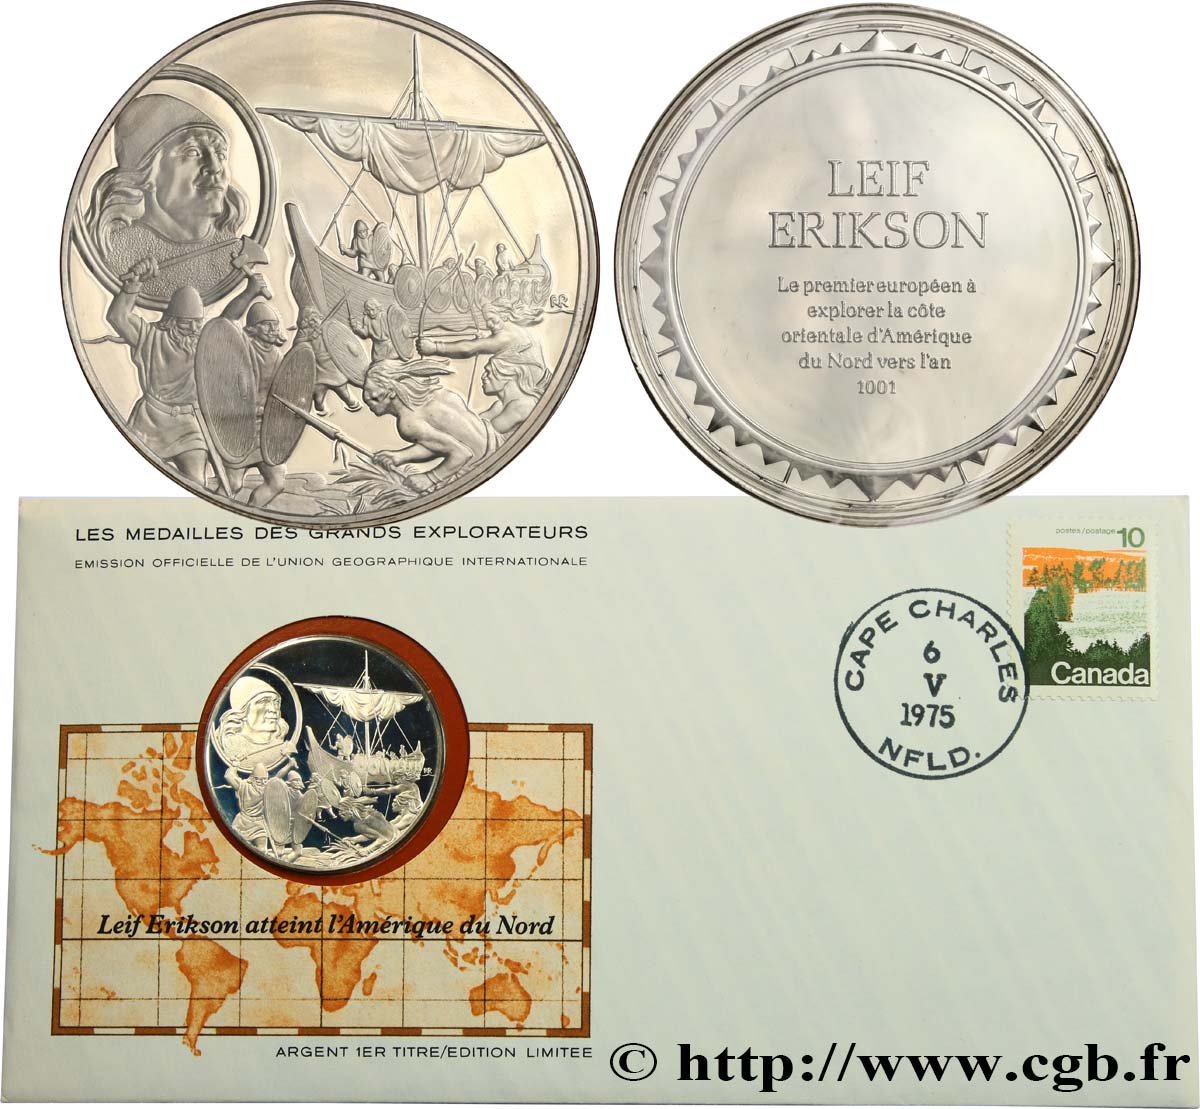 THE GREAT EXPLORERS  MEDALS Enveloppe “Timbre médaille”, Leif Erikson atteint l’Amérique du Nord fST